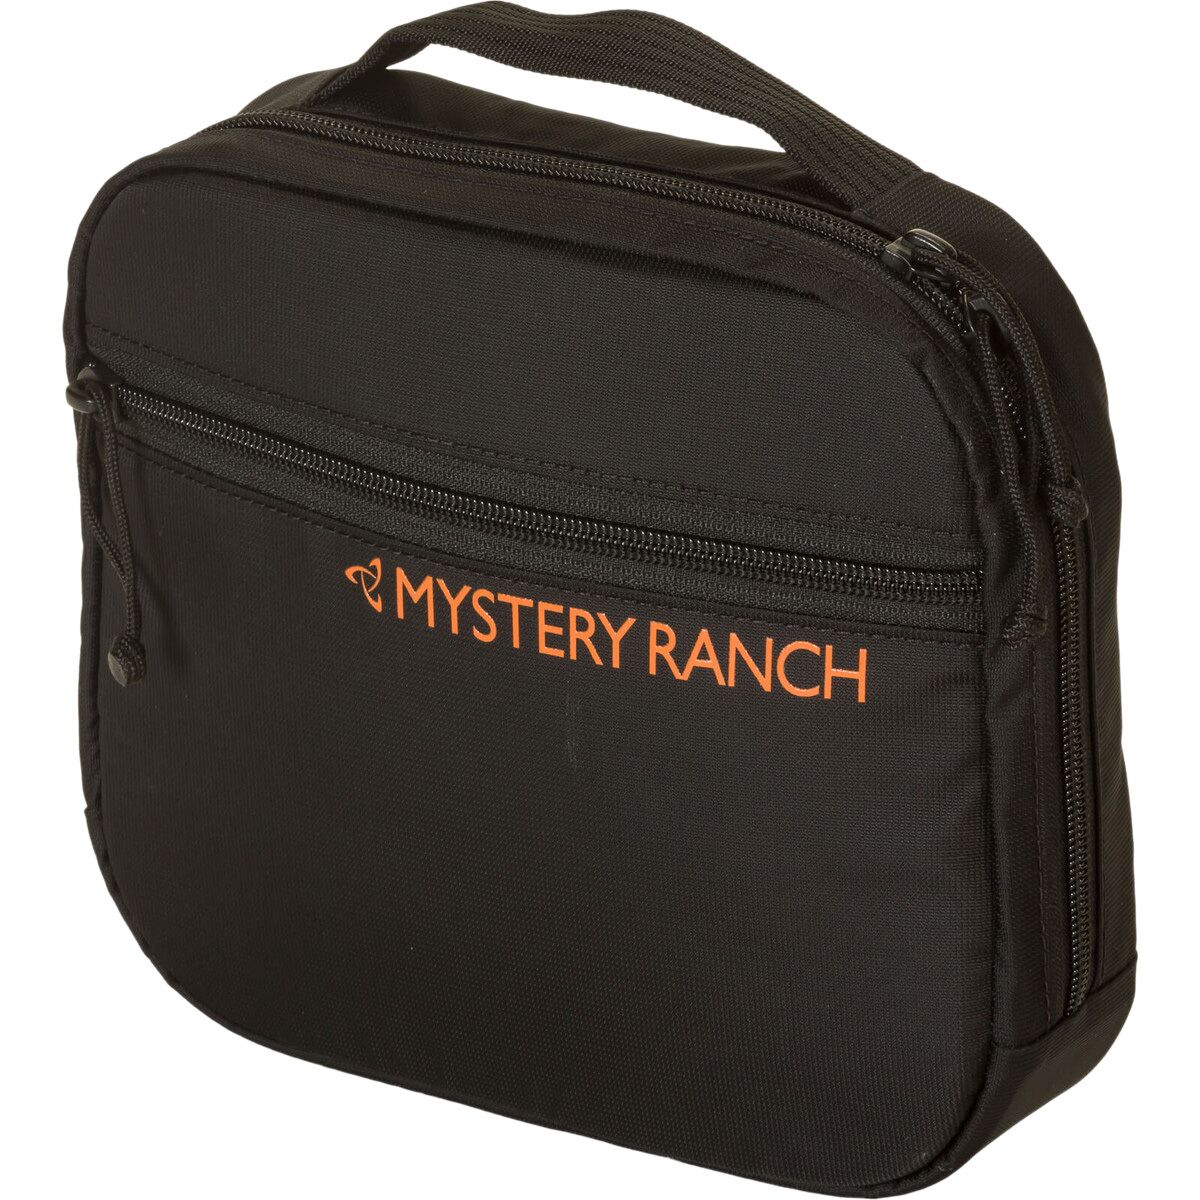 Mystery Ranch Mission Control - Medium